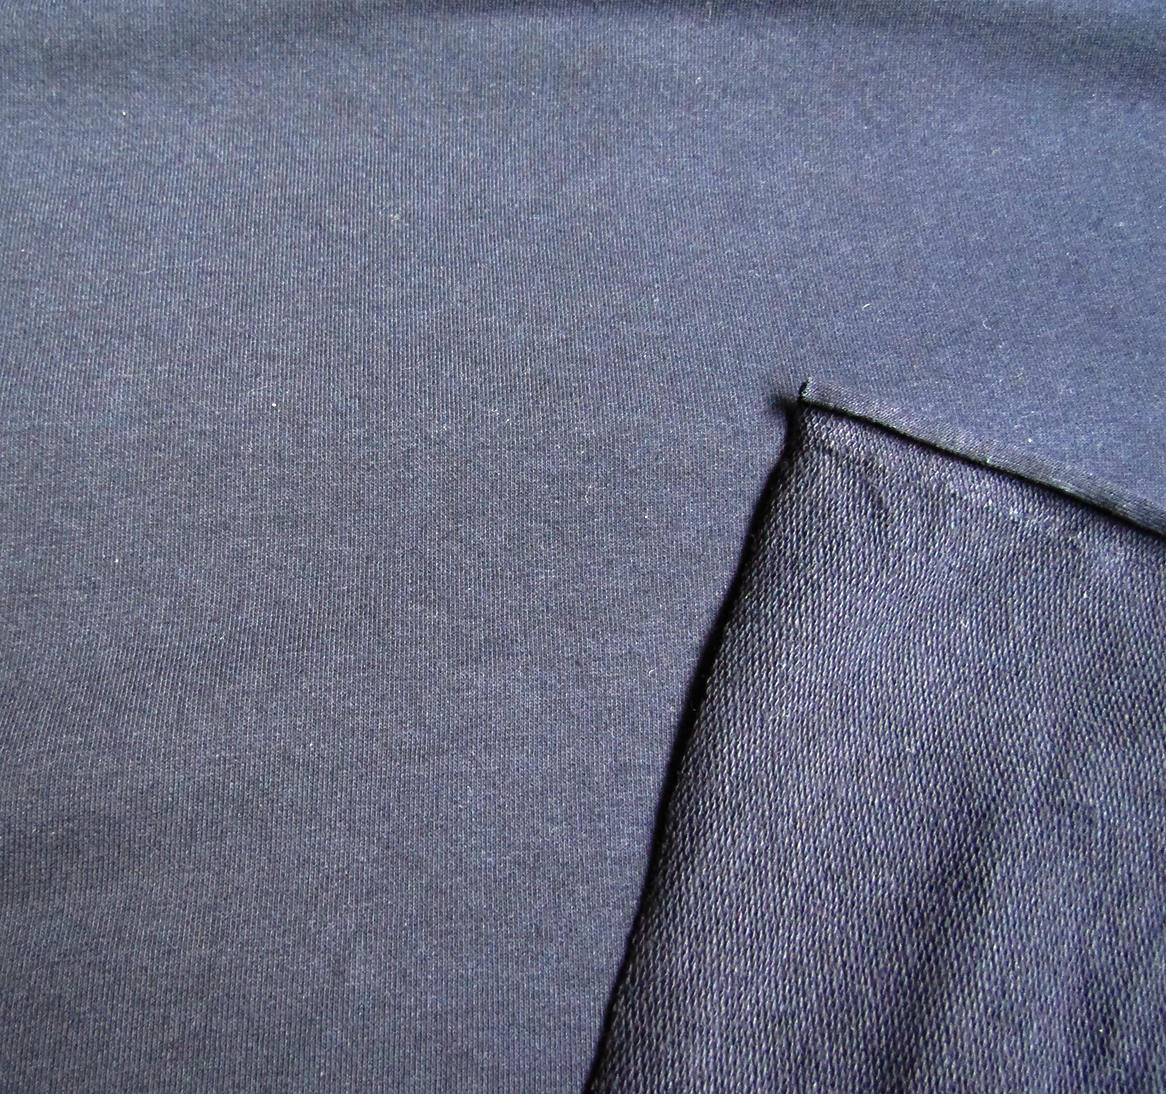 Sweatshirt Jersey Fabric Jersey Fabric 3 Colors Jersey Knit | Etsy UK